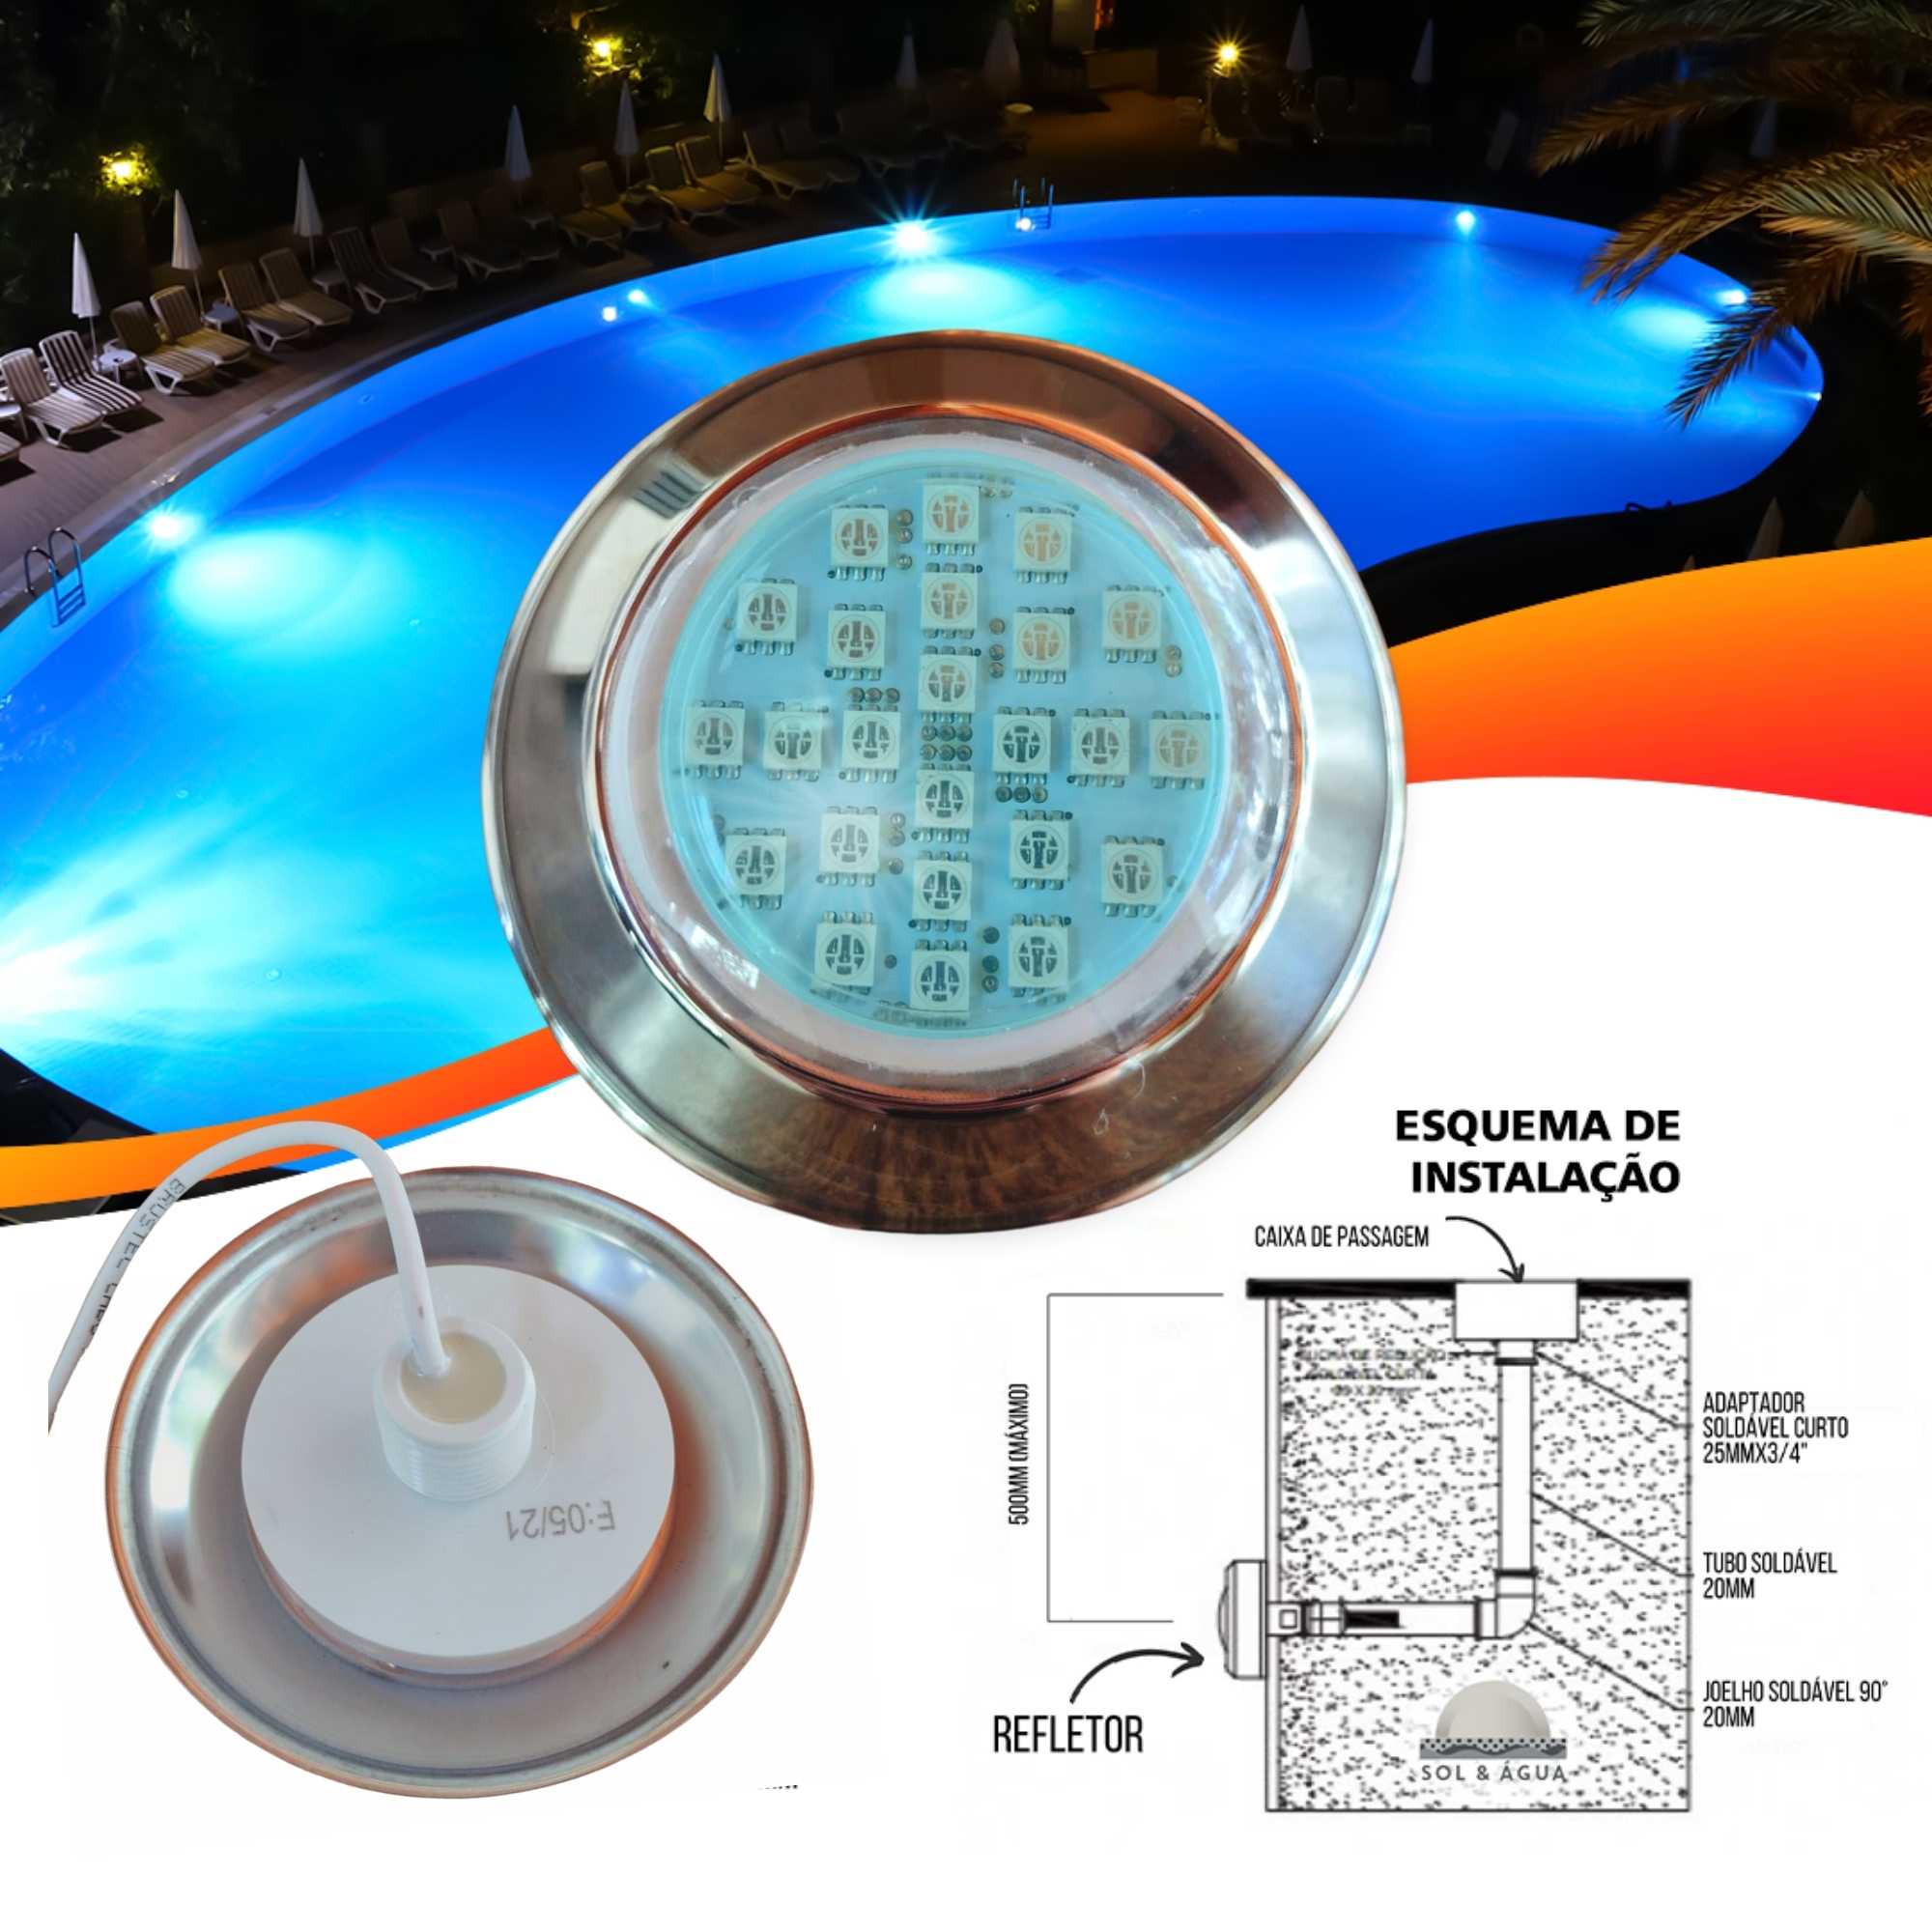 Refletor Power LED 5W Inox Cor da Luz Azul Iluminação para Piscina - Brustec - Sol e Água Piscinas e Acessórios